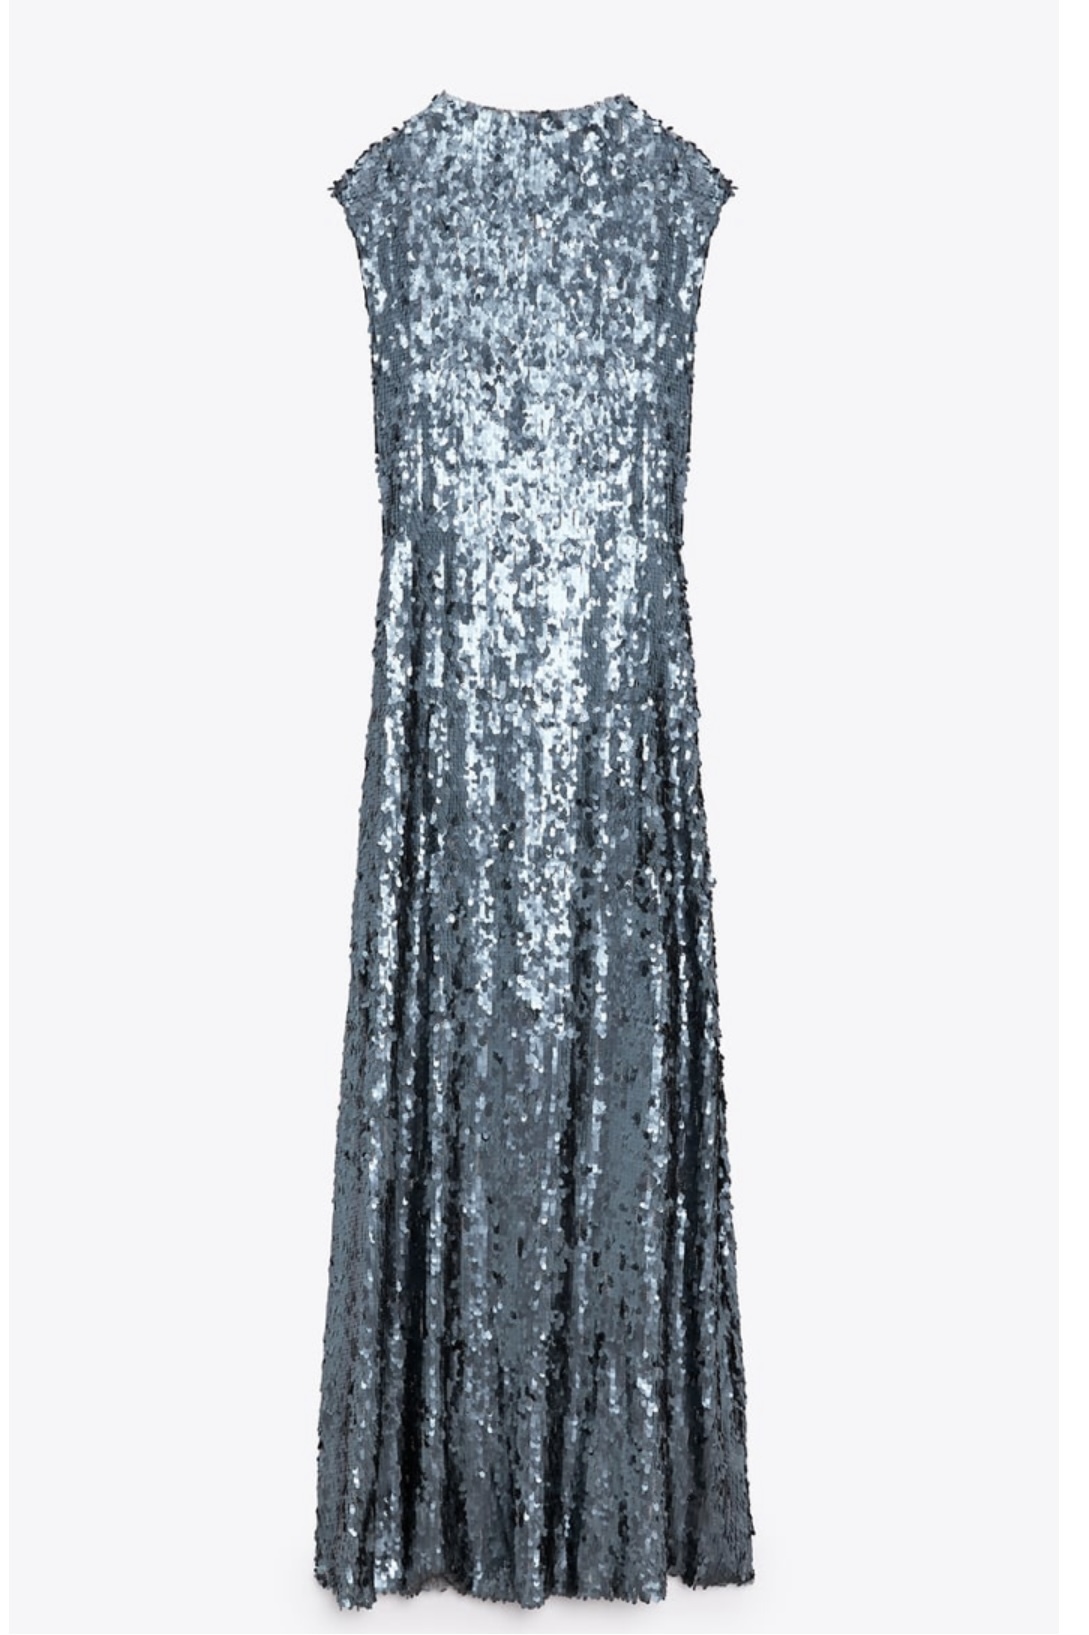 Vestido de lentejuelas de Zara (69,95 euros).